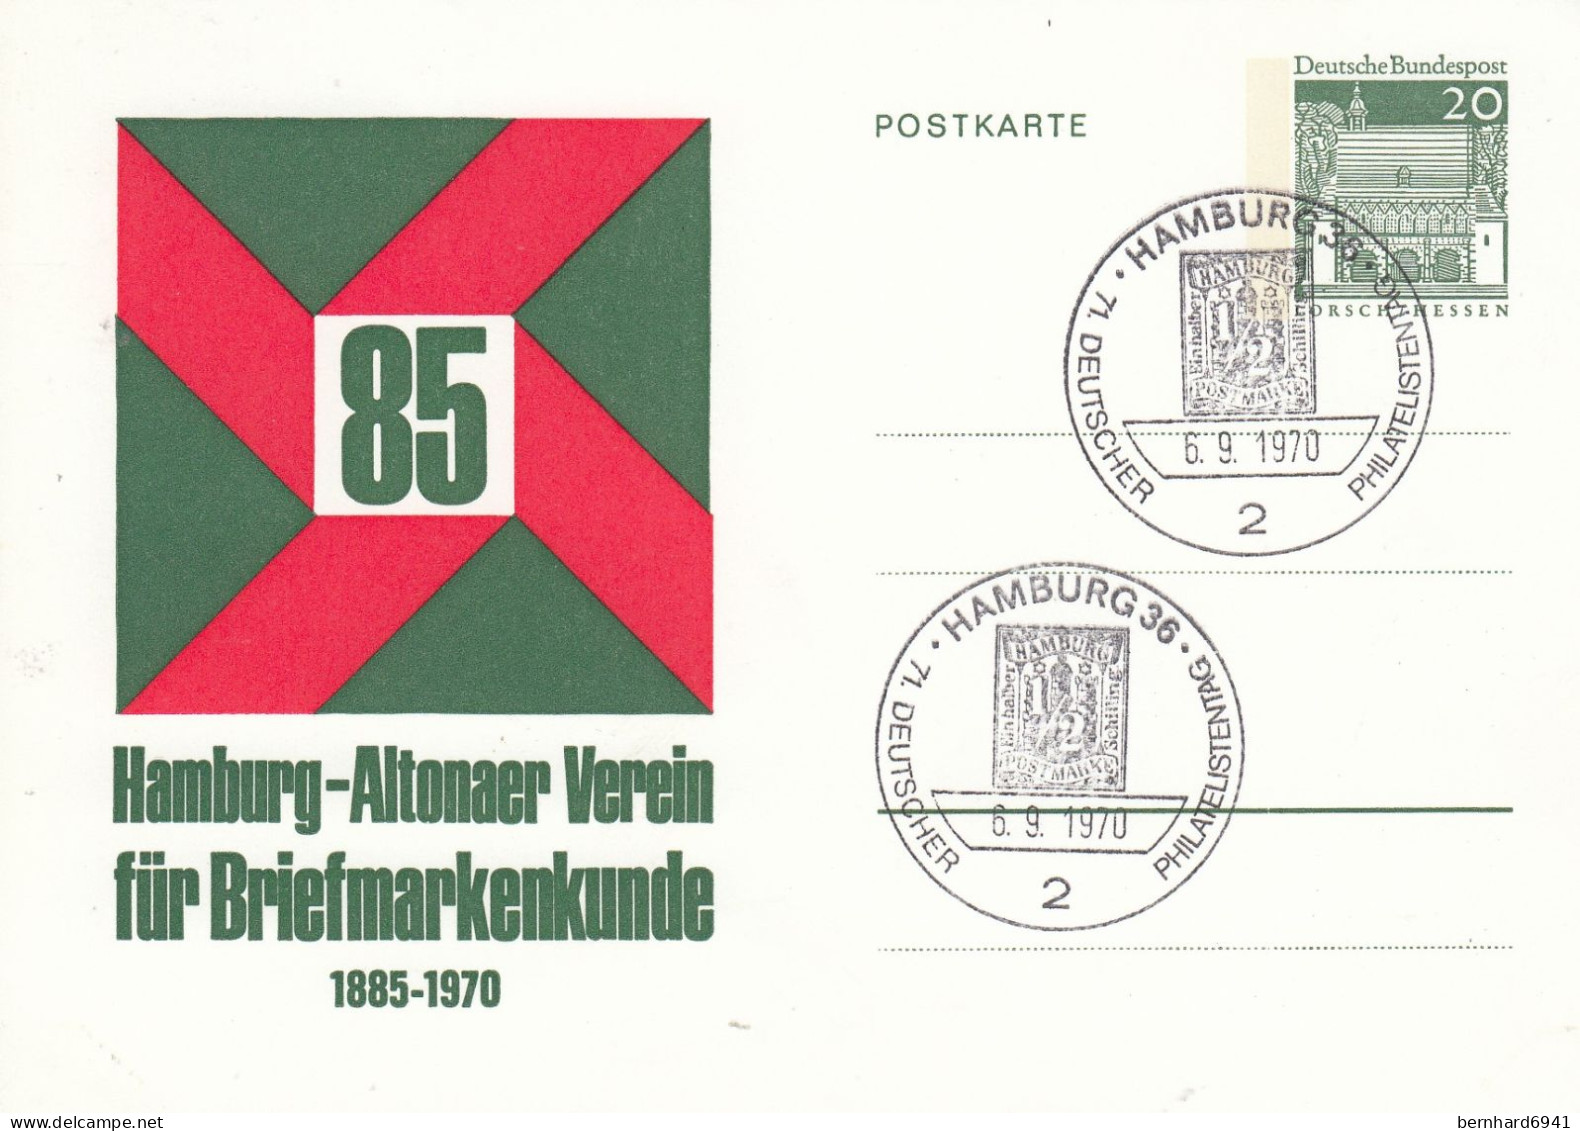 PP 38/16 85 Hamburg-Altonaer Verein Für Briefmarkenkunde 1885 - 1970, Hamburg 36 - Private Postcards - Mint